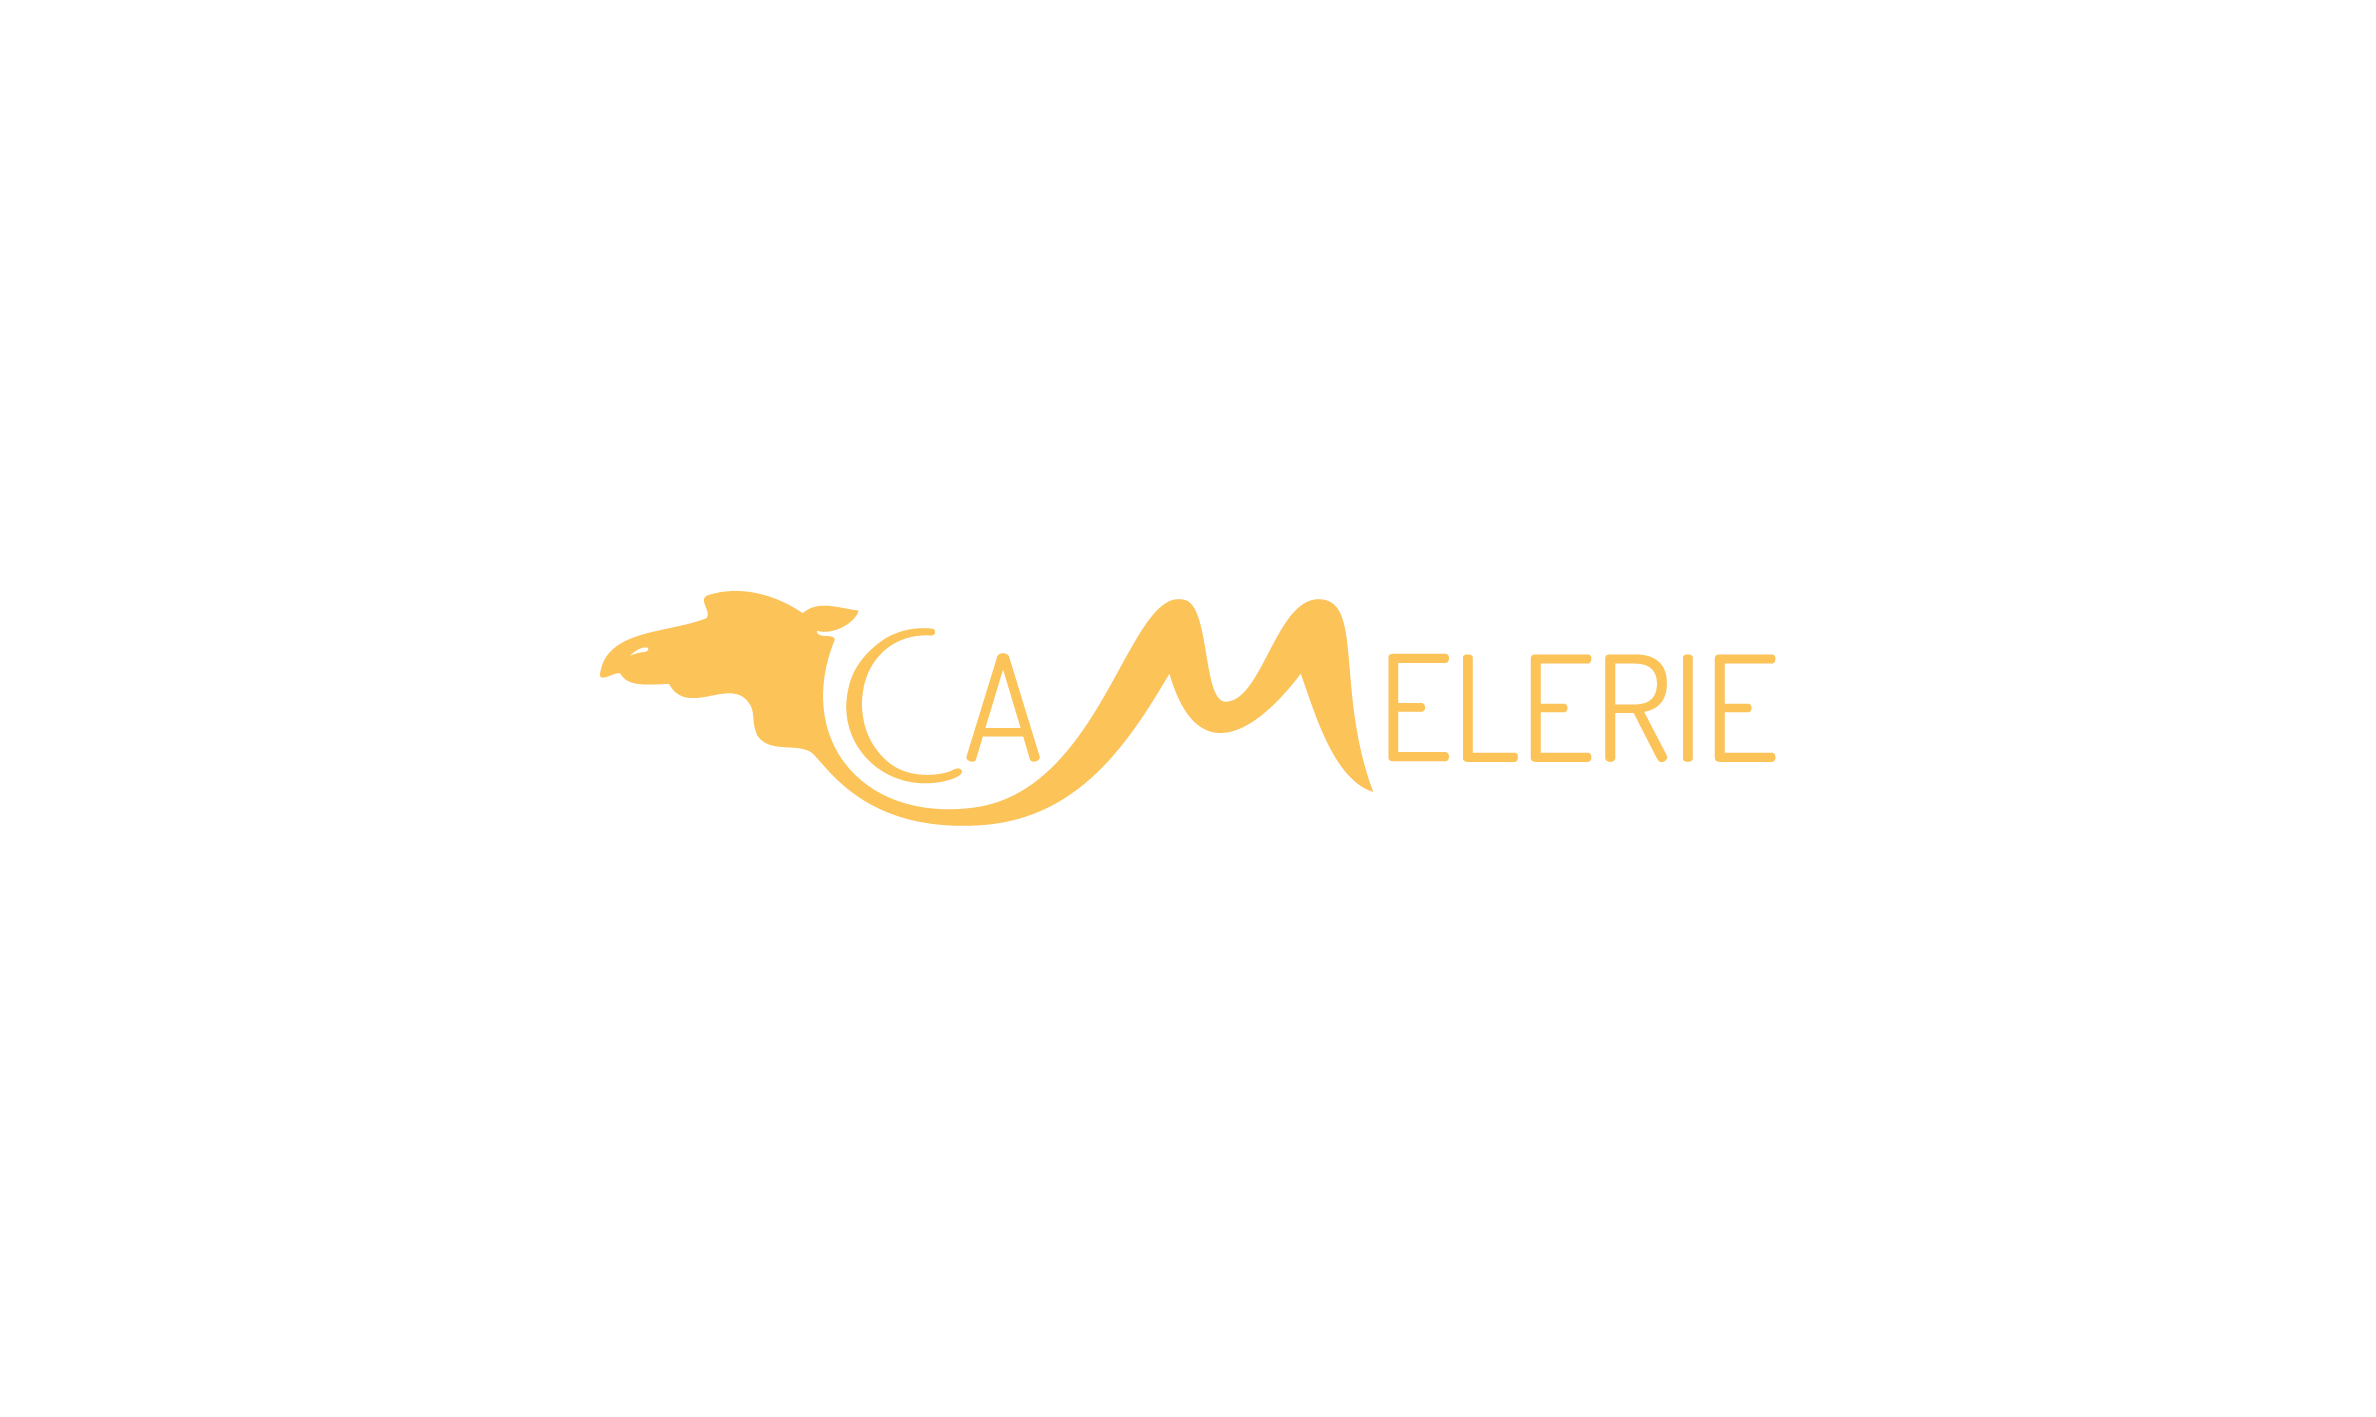 logo La Camelerie